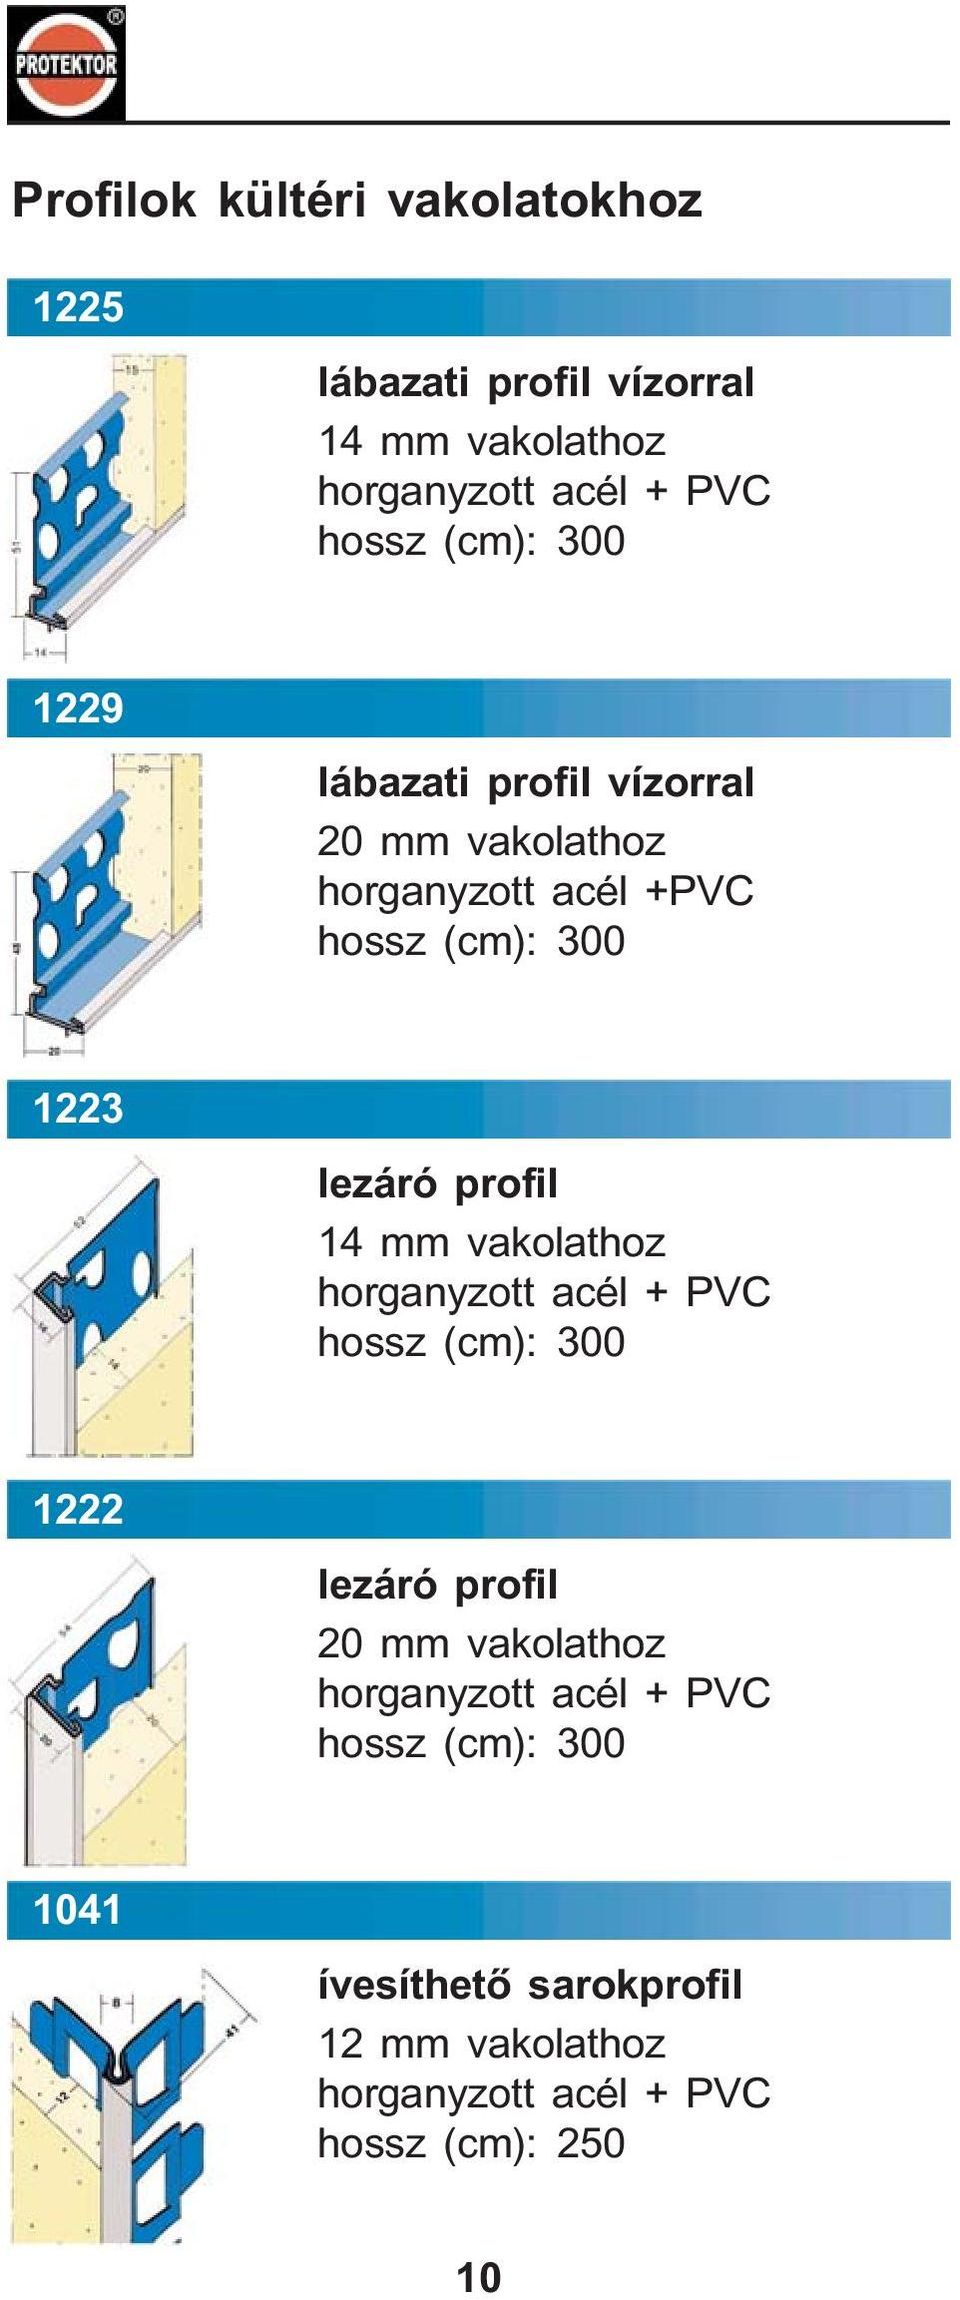 +PVC 1223 lezáró profil 14 mm vakolathoz + PVC 1222 lezáró profil